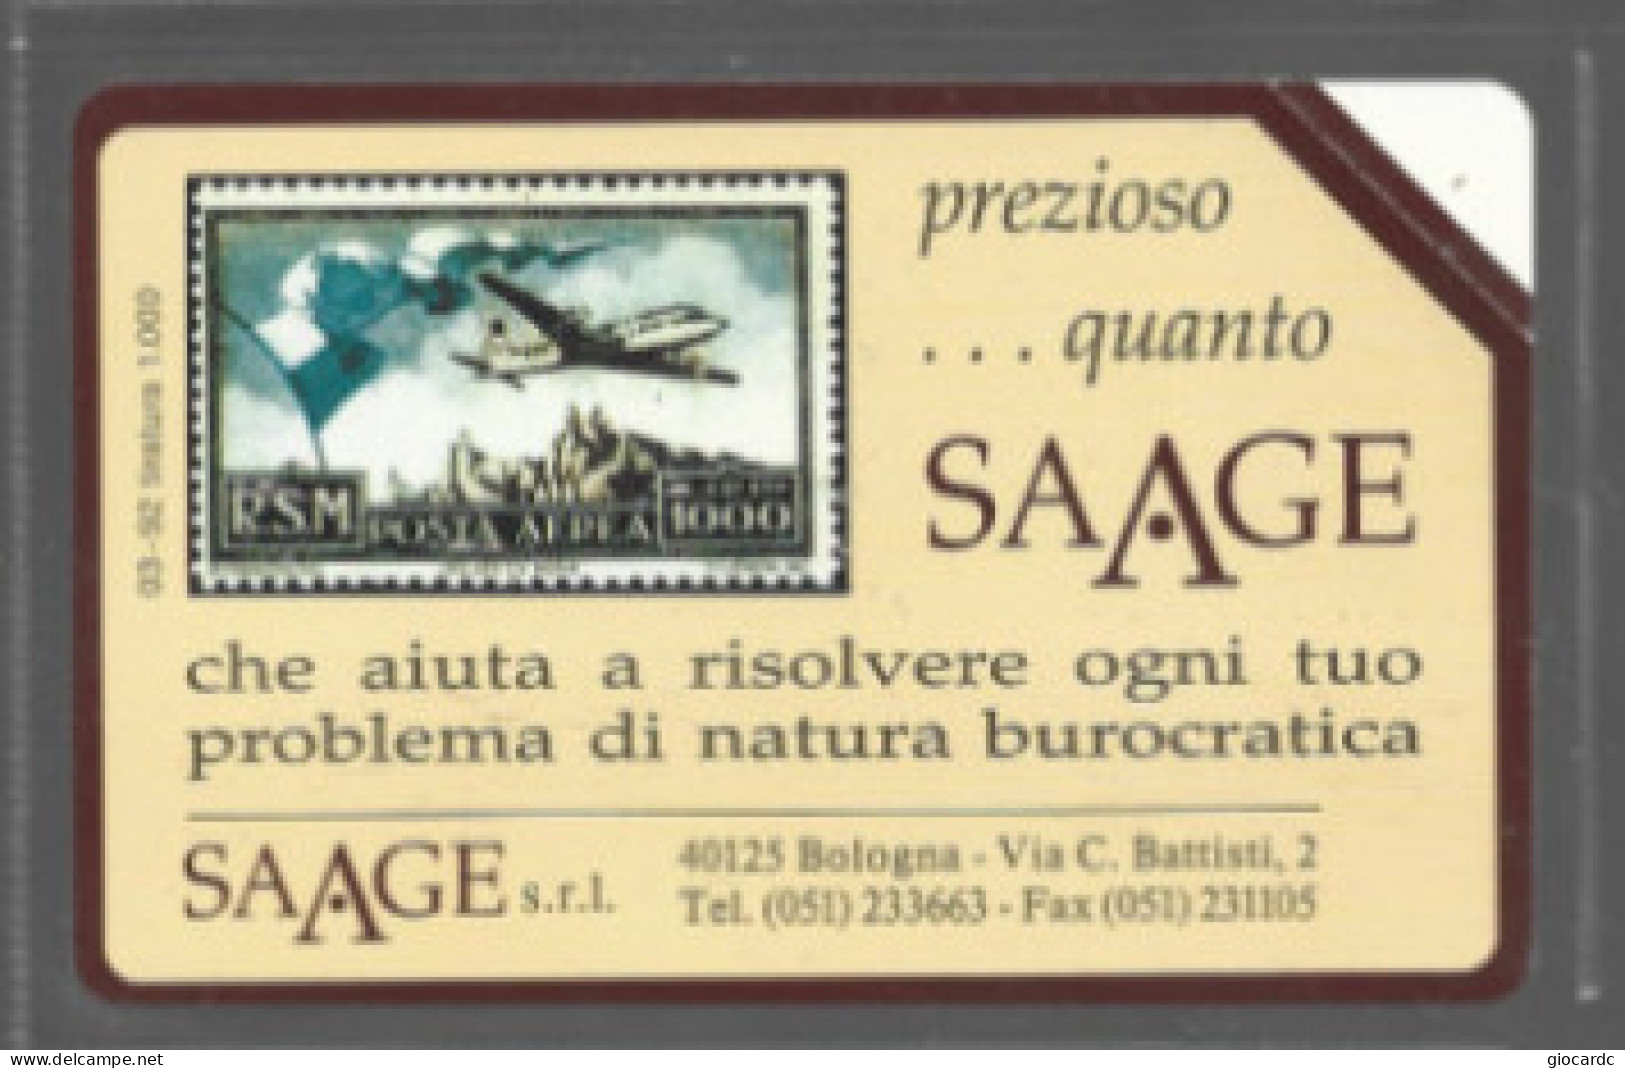 TELECOM ITALIA  (PERIODO SIP)  OMAGGIO PRIVATE -  C. & C. 3164 - SAAGE: SAN MARINO  - NUOVE ** - Privadas - Homenaje